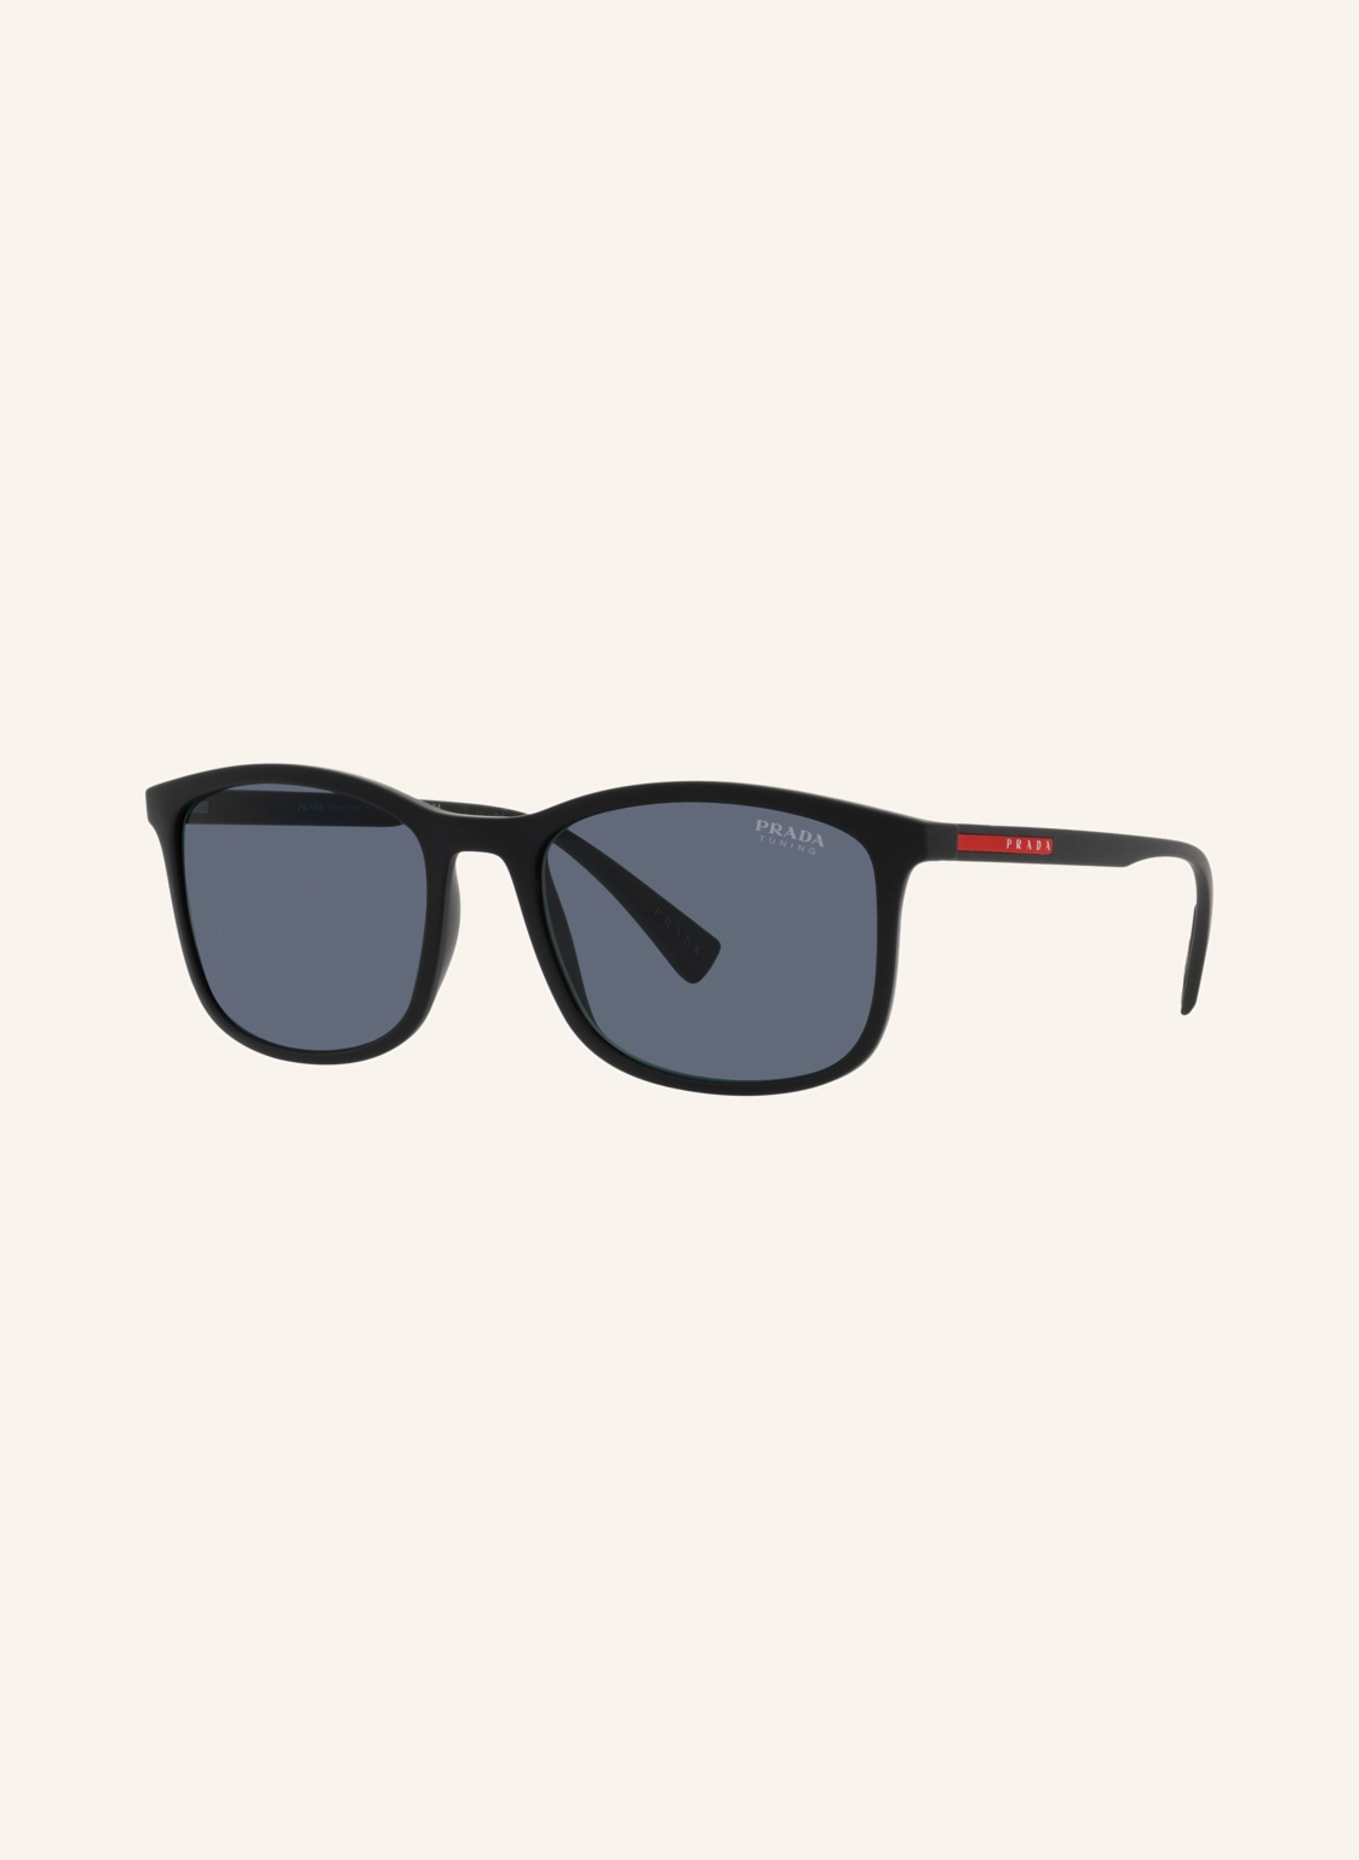 PRADA LINEA ROSSA Sunglasses PS 01TS, Color: DG009R - BLACK/ BLUE (Image 1)